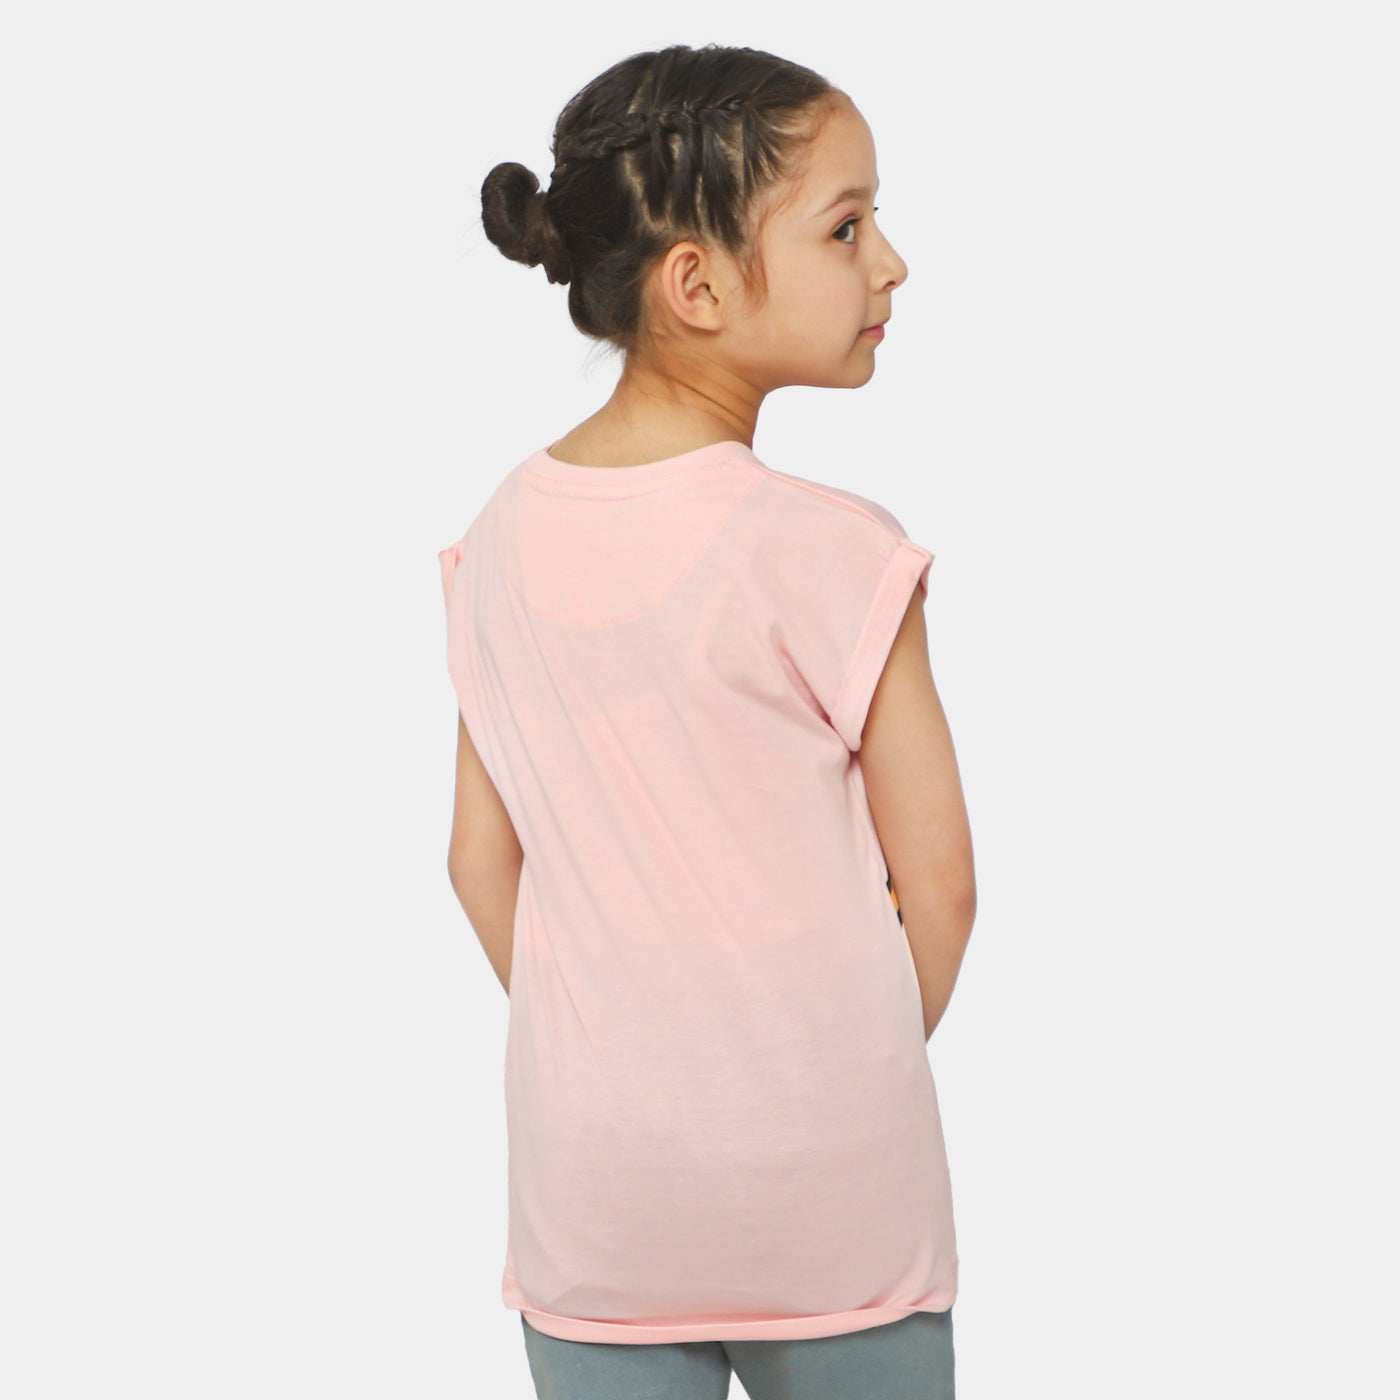 Girls Cotton T-Shirt Character - Light Pink